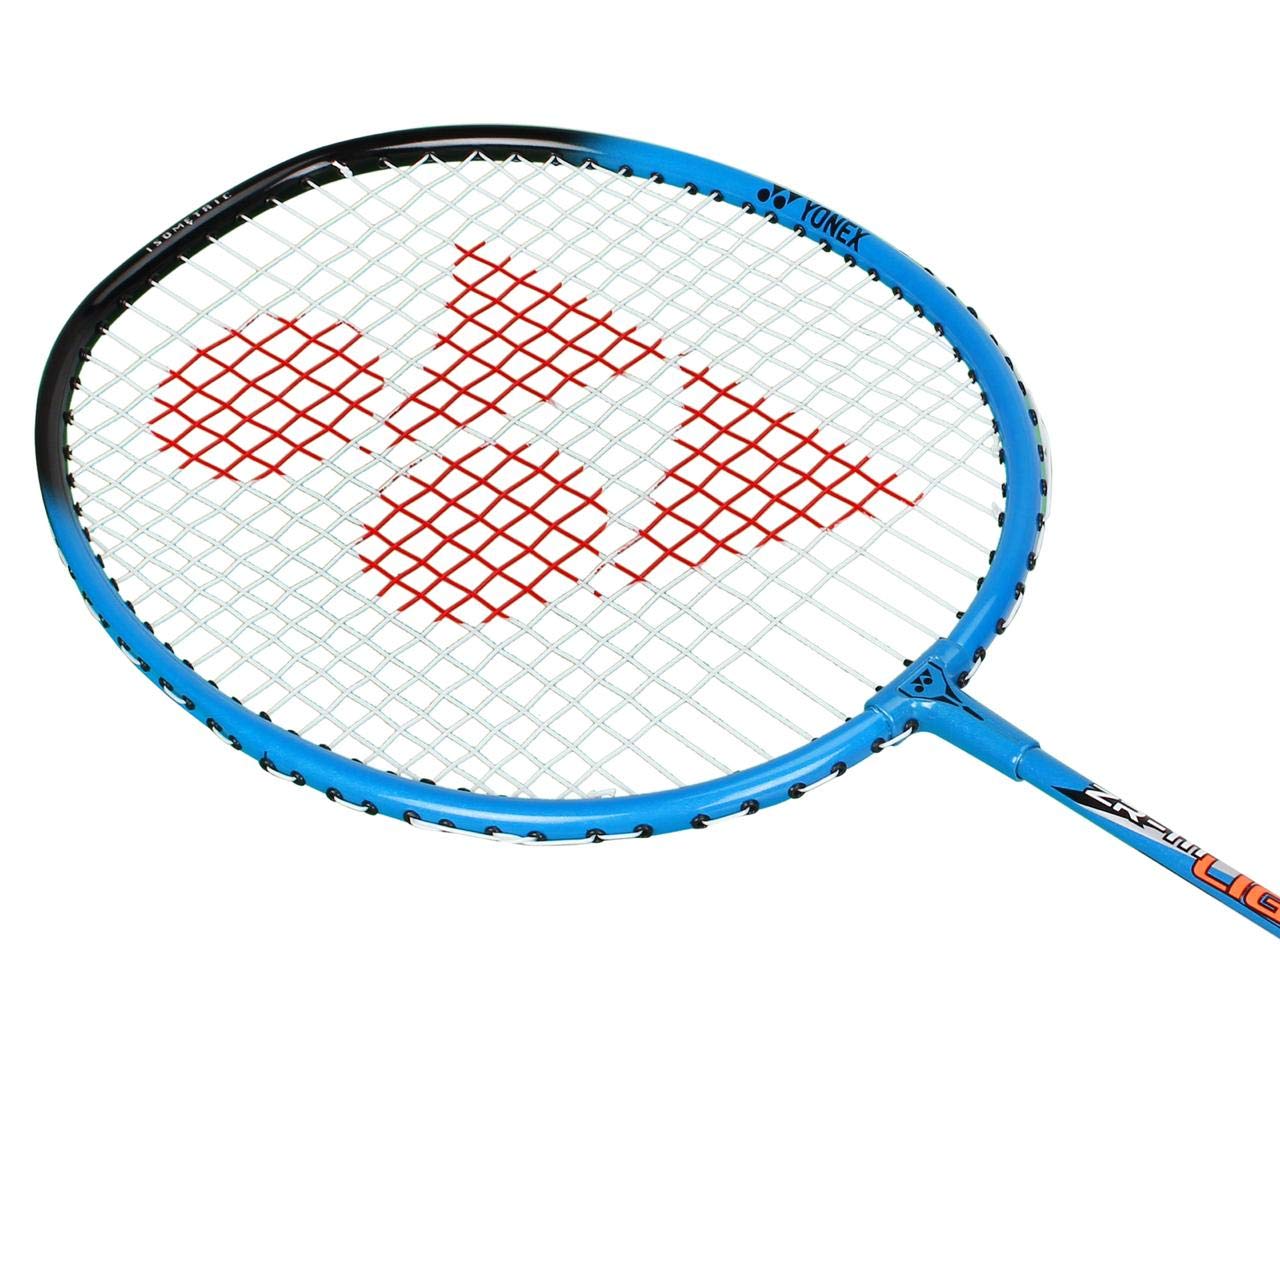 Yonex ZR 111 Light Badminton Racket (Blue)